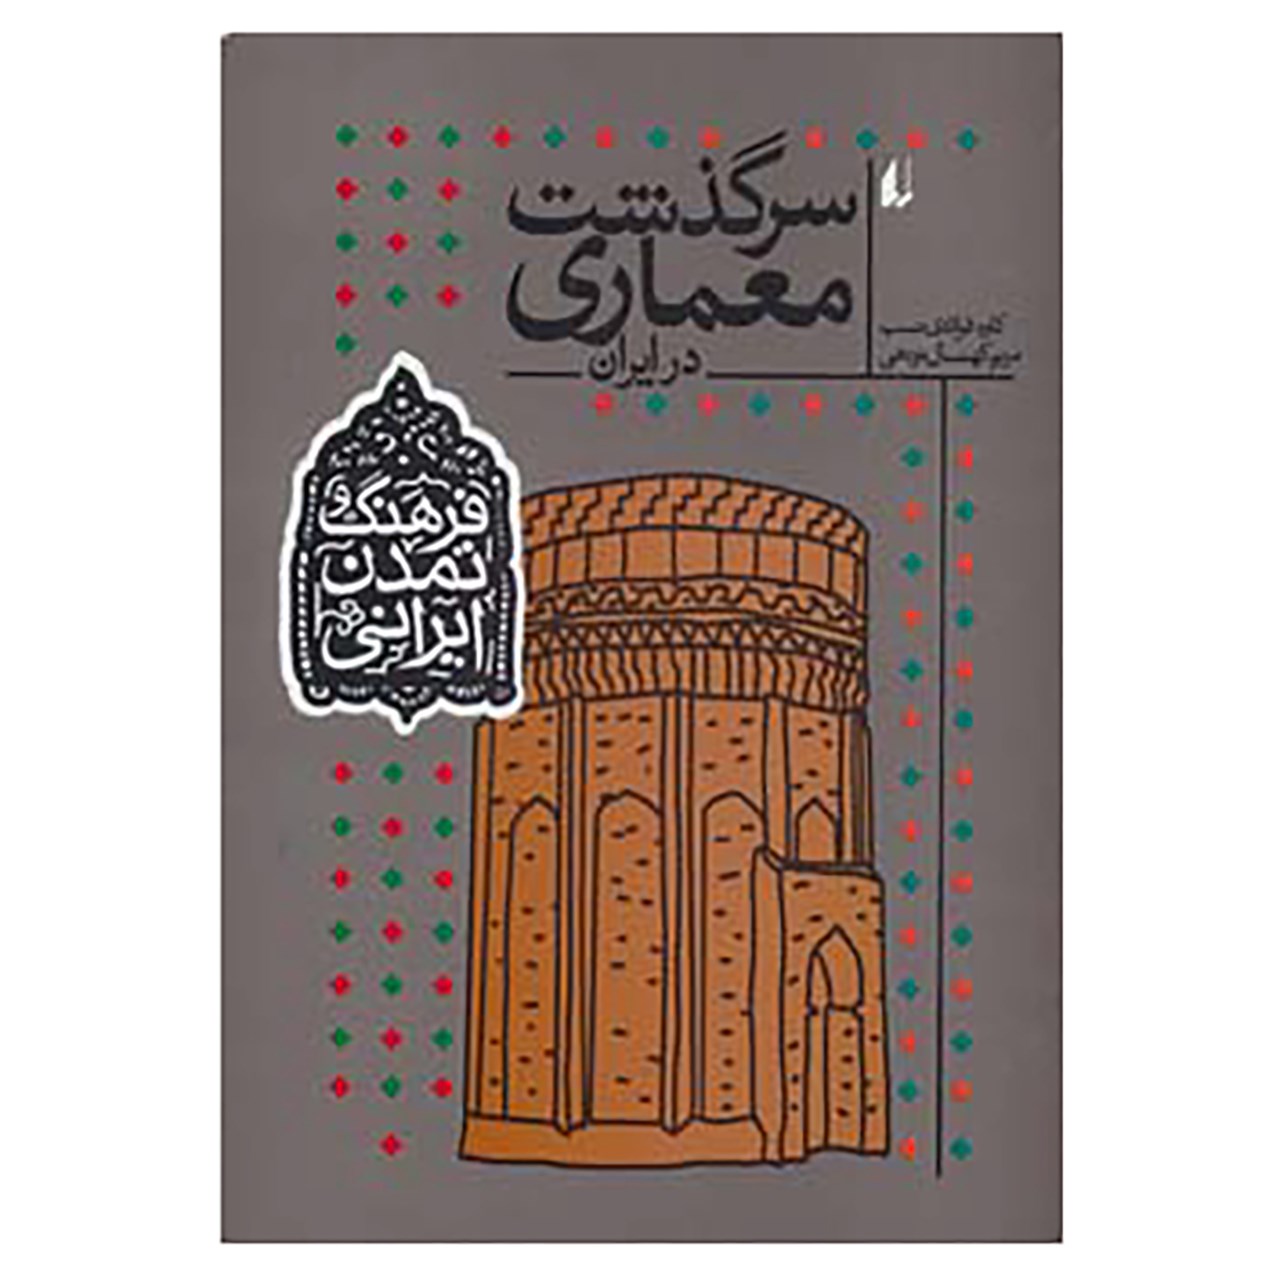 نقد و بررسی کتاب فرهنگ و تمدن ایرانی 8 اثر کاوه فولادی نسب,مریم کهنسال نودهی توسط خریداران